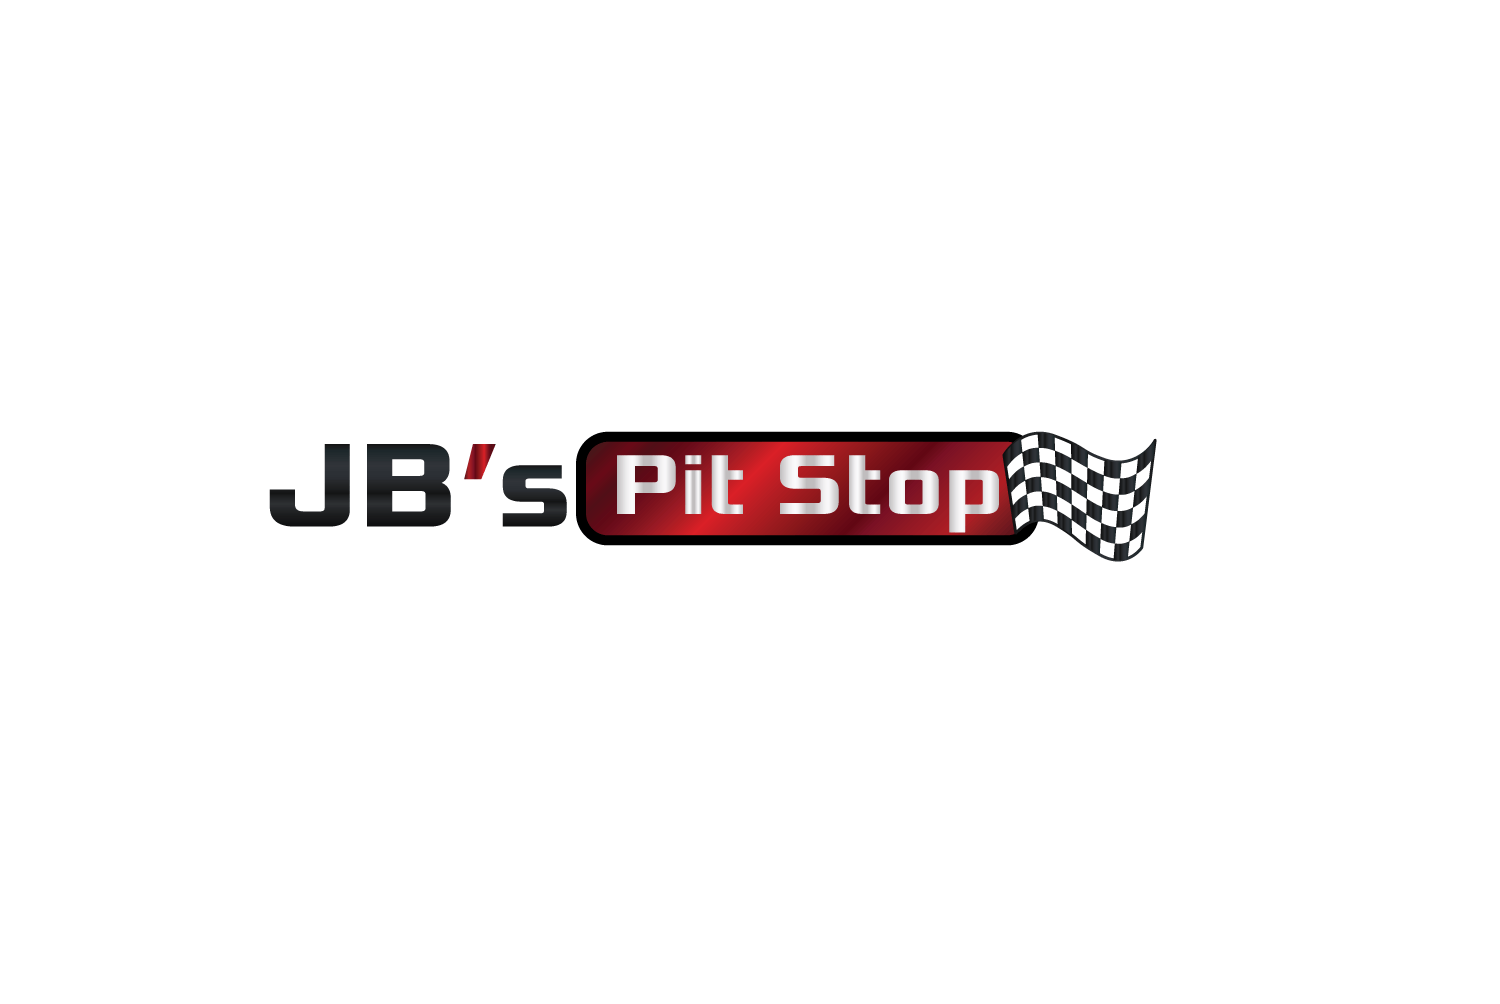 Janssen Logo - Bold, Modern, Automotive Logo Design for JB's Pit Stop by Kristina ...